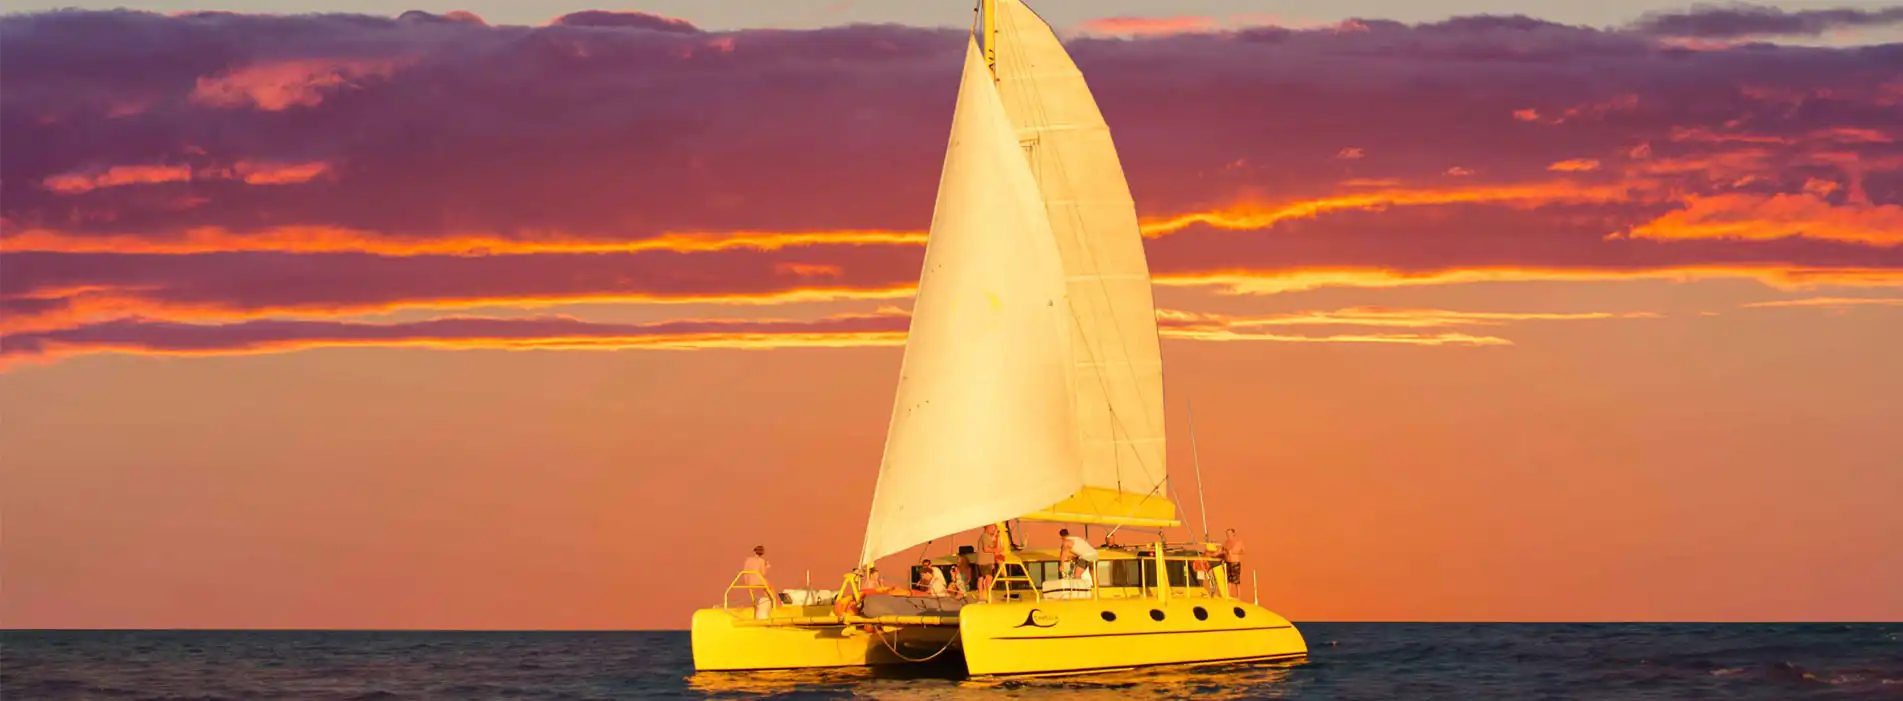 CAPELLA-sunset-cruises copy